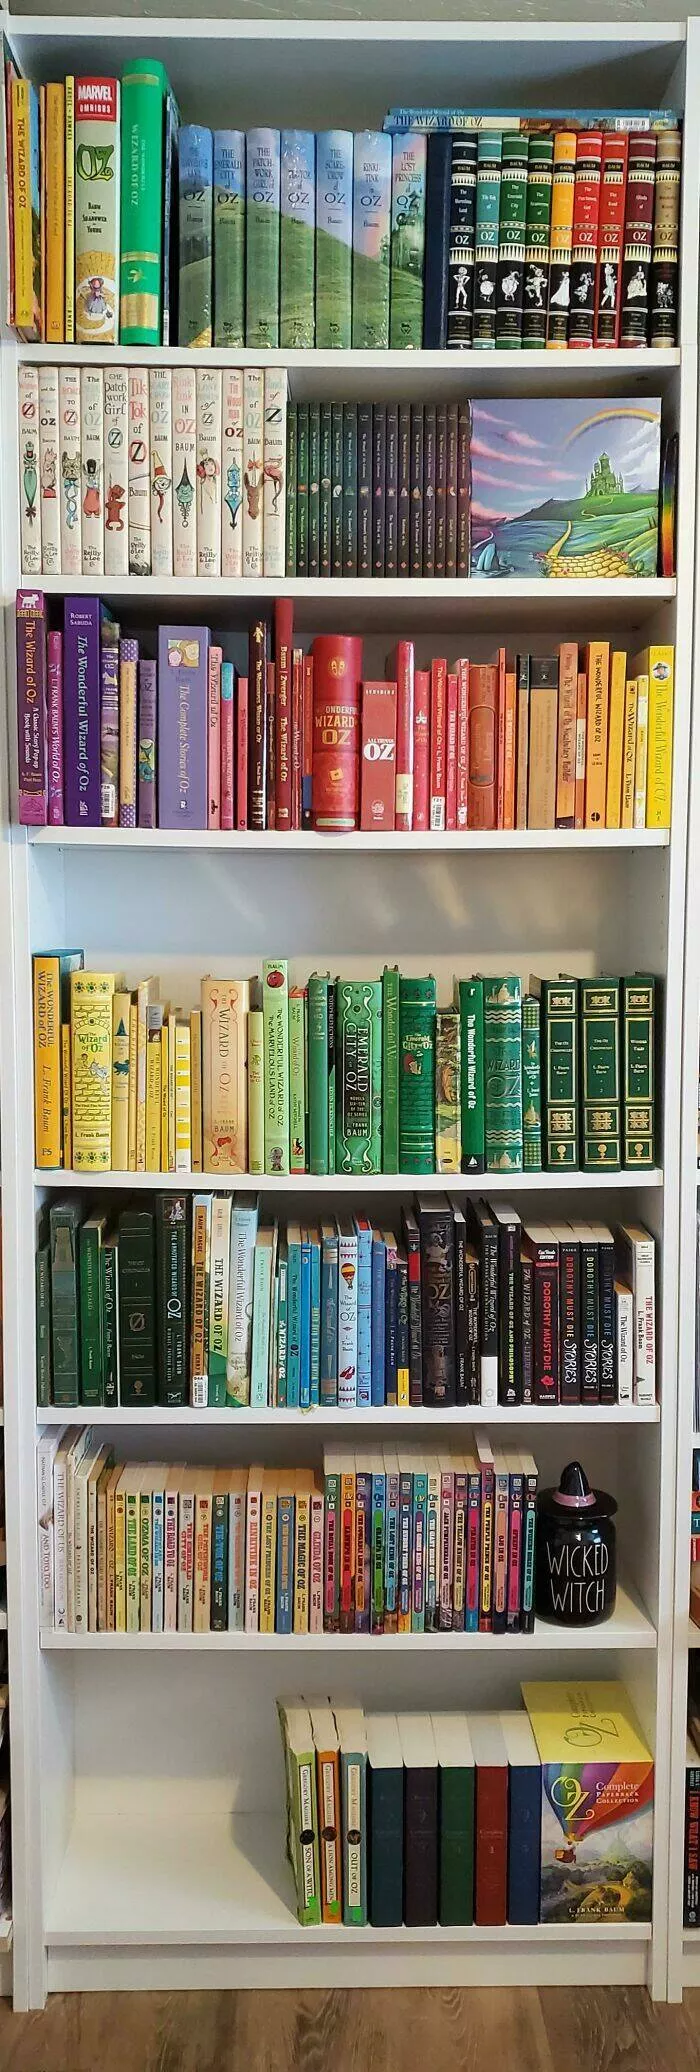 Chroniques farfelues lvolution dobsessions inattendues en collections srieuses - #14 Collection de livres du Magicien d'Oz.